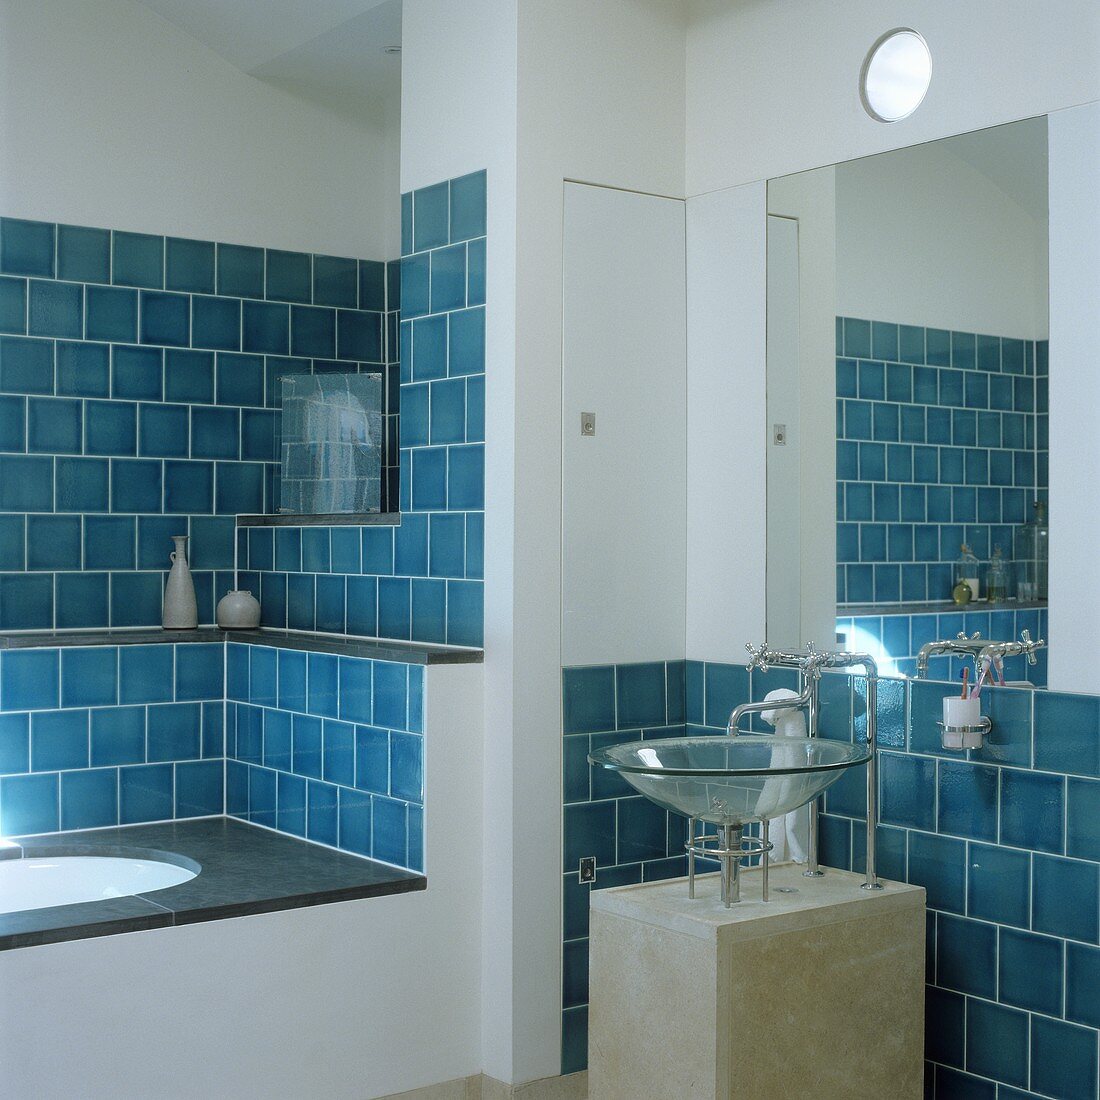 Blaue Wandfliesen in Nische der eingebauten Badewanne und Waschschüssel aus Glas auf Betonsockel und Spiegel